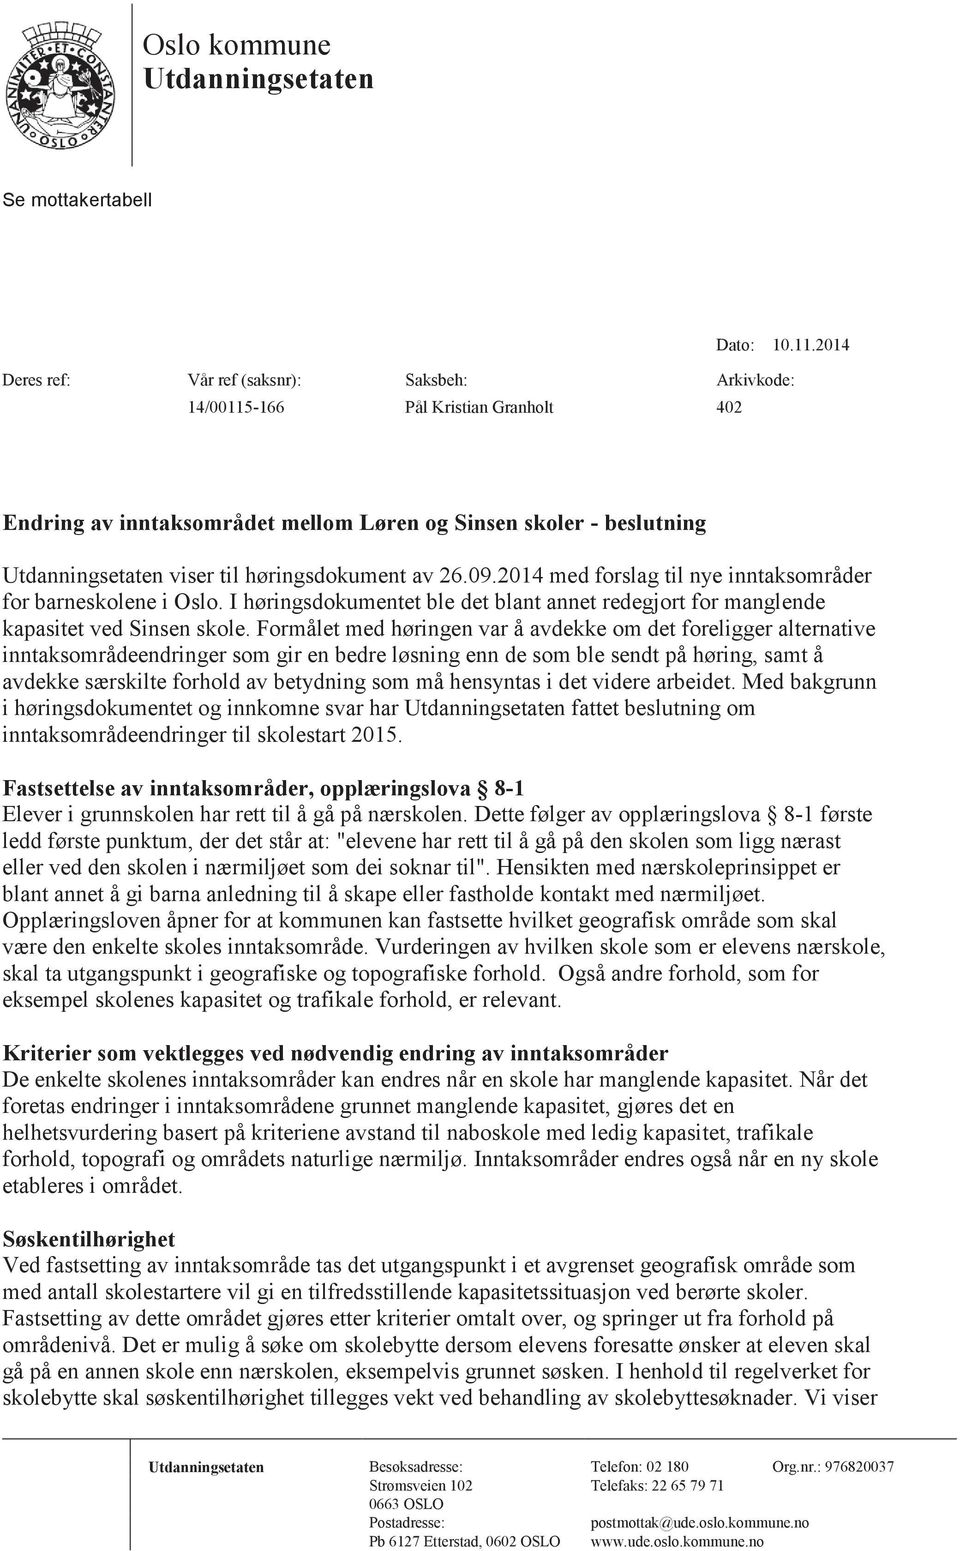 høringsdokument av 26.09.2014 med forslag til nye inntaksområder for barneskolene i Oslo. I høringsdokumentet ble det blant annet redegjort for manglende kapasitet ved Sinsen skole.